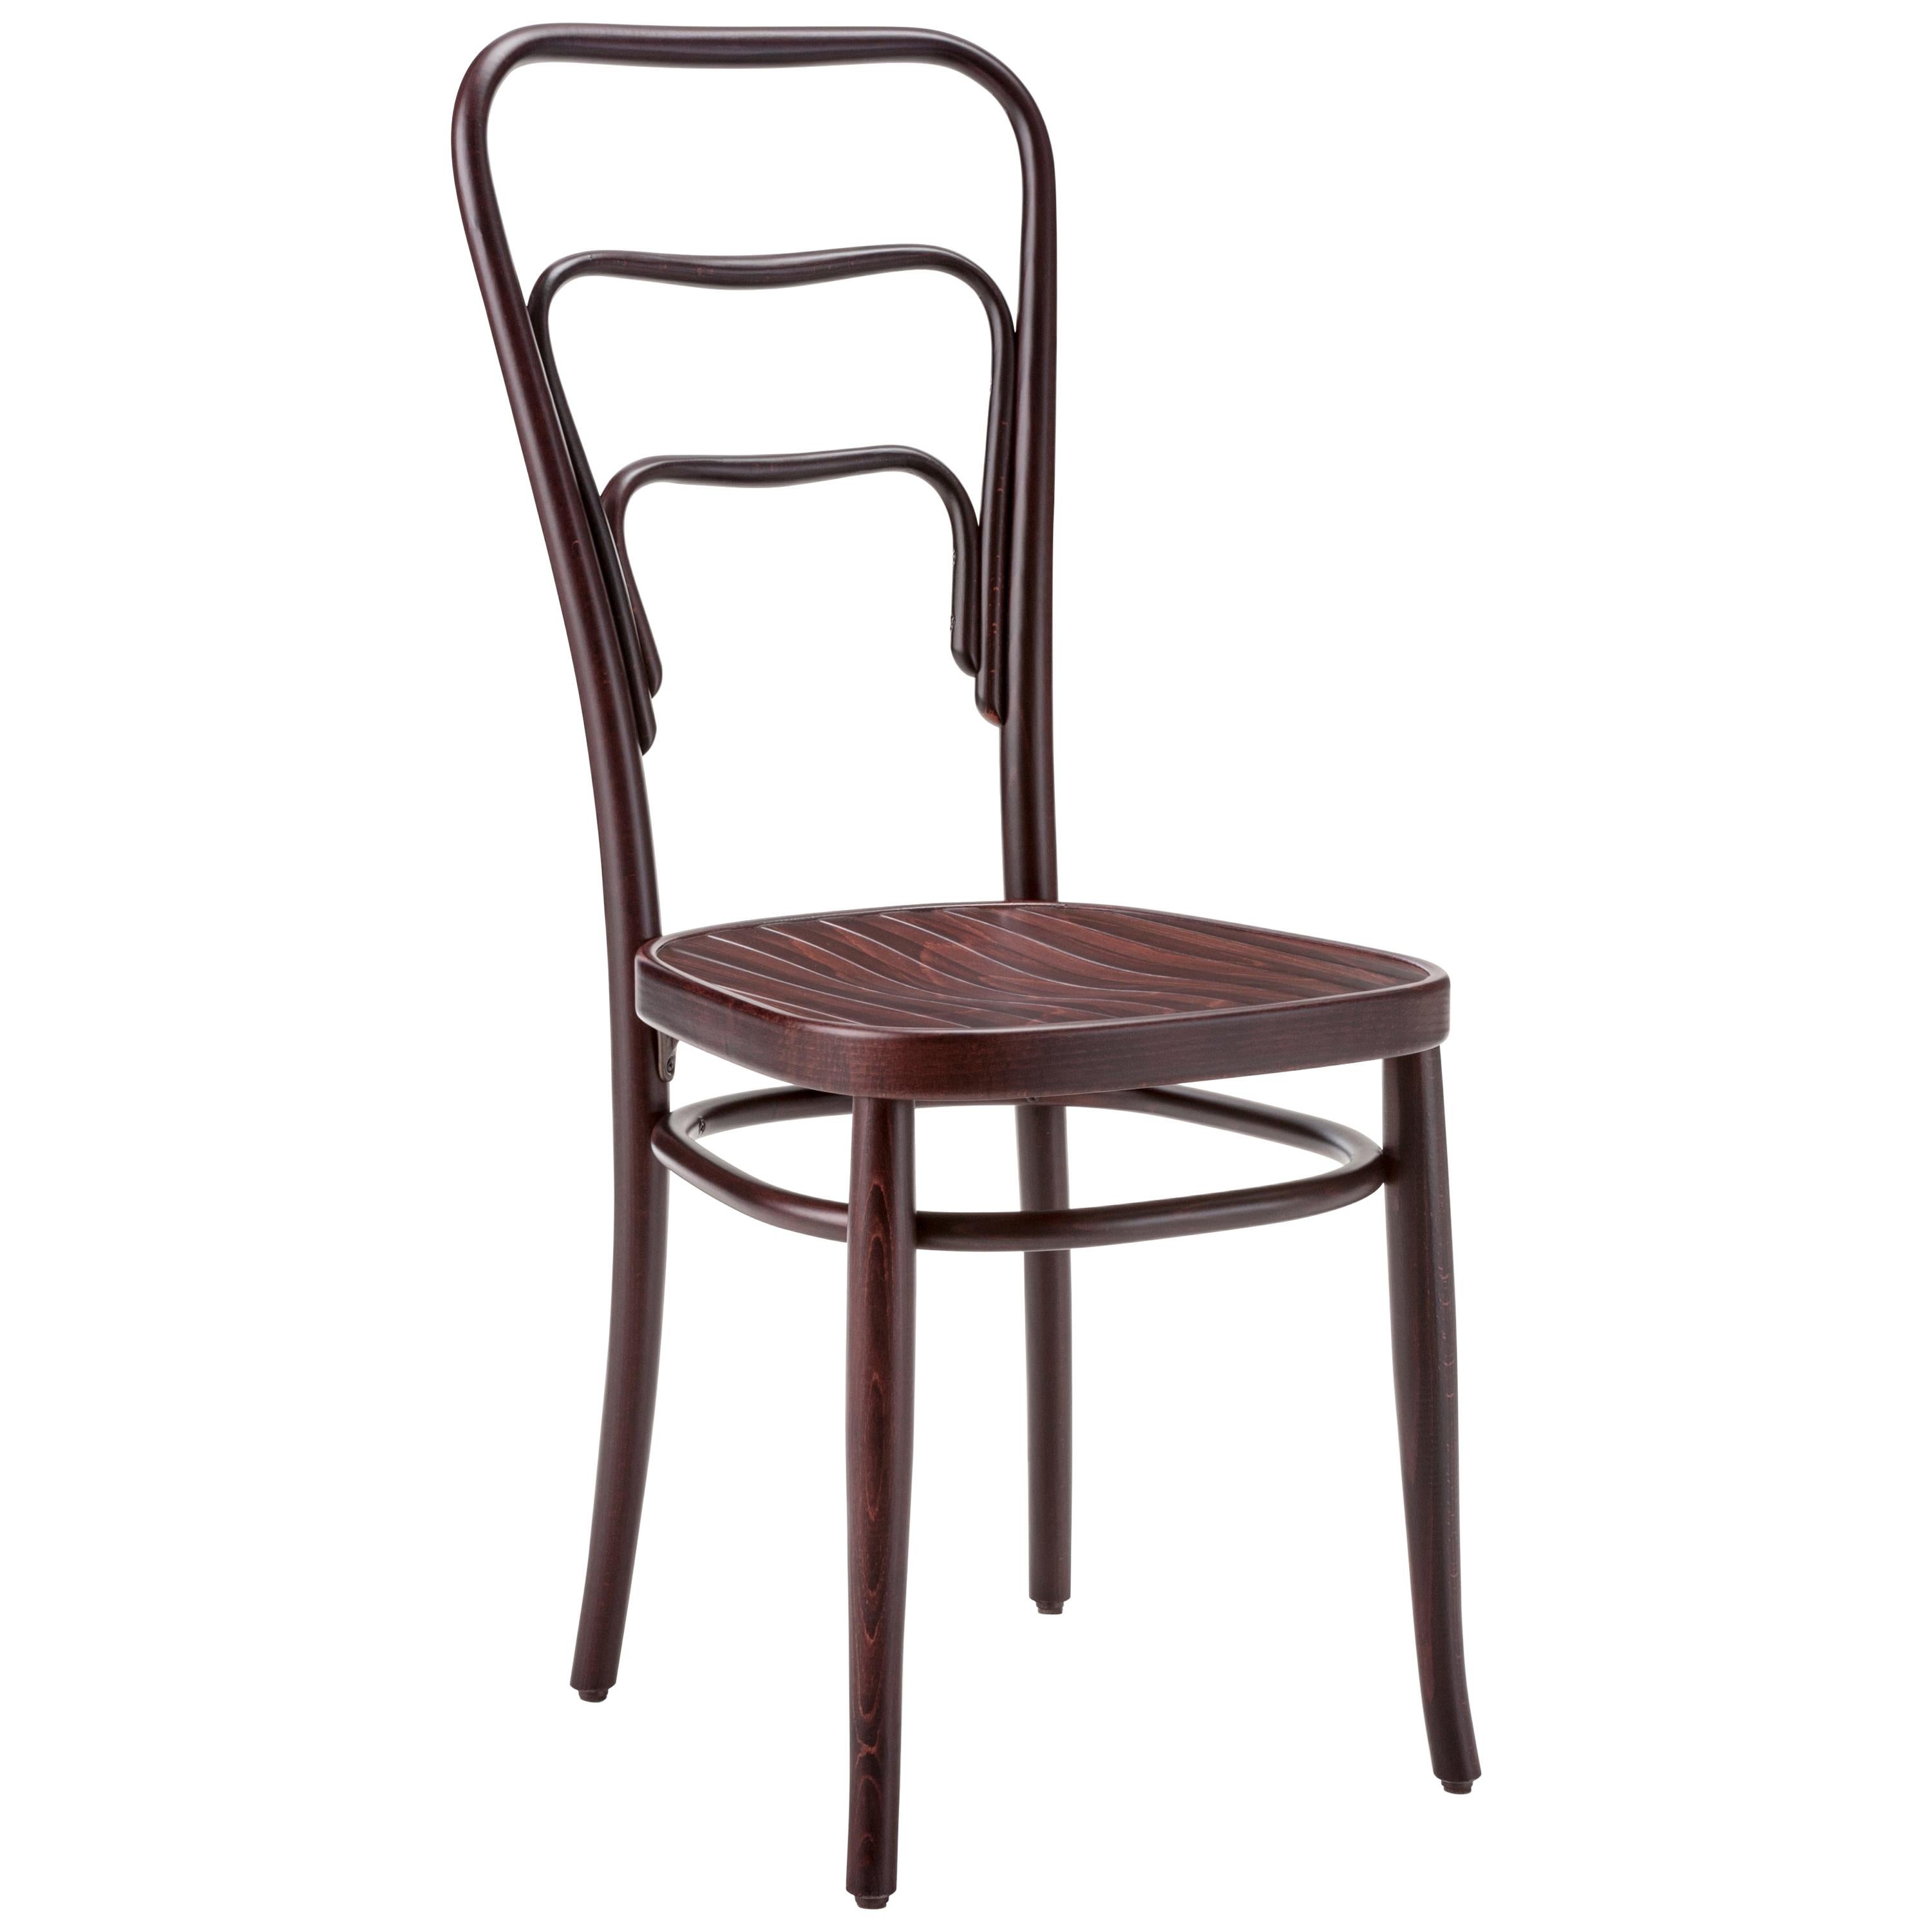 Gebrüder Thonet Vienna GmbH 144 Chair in Walnut with Strip Pattern Seat